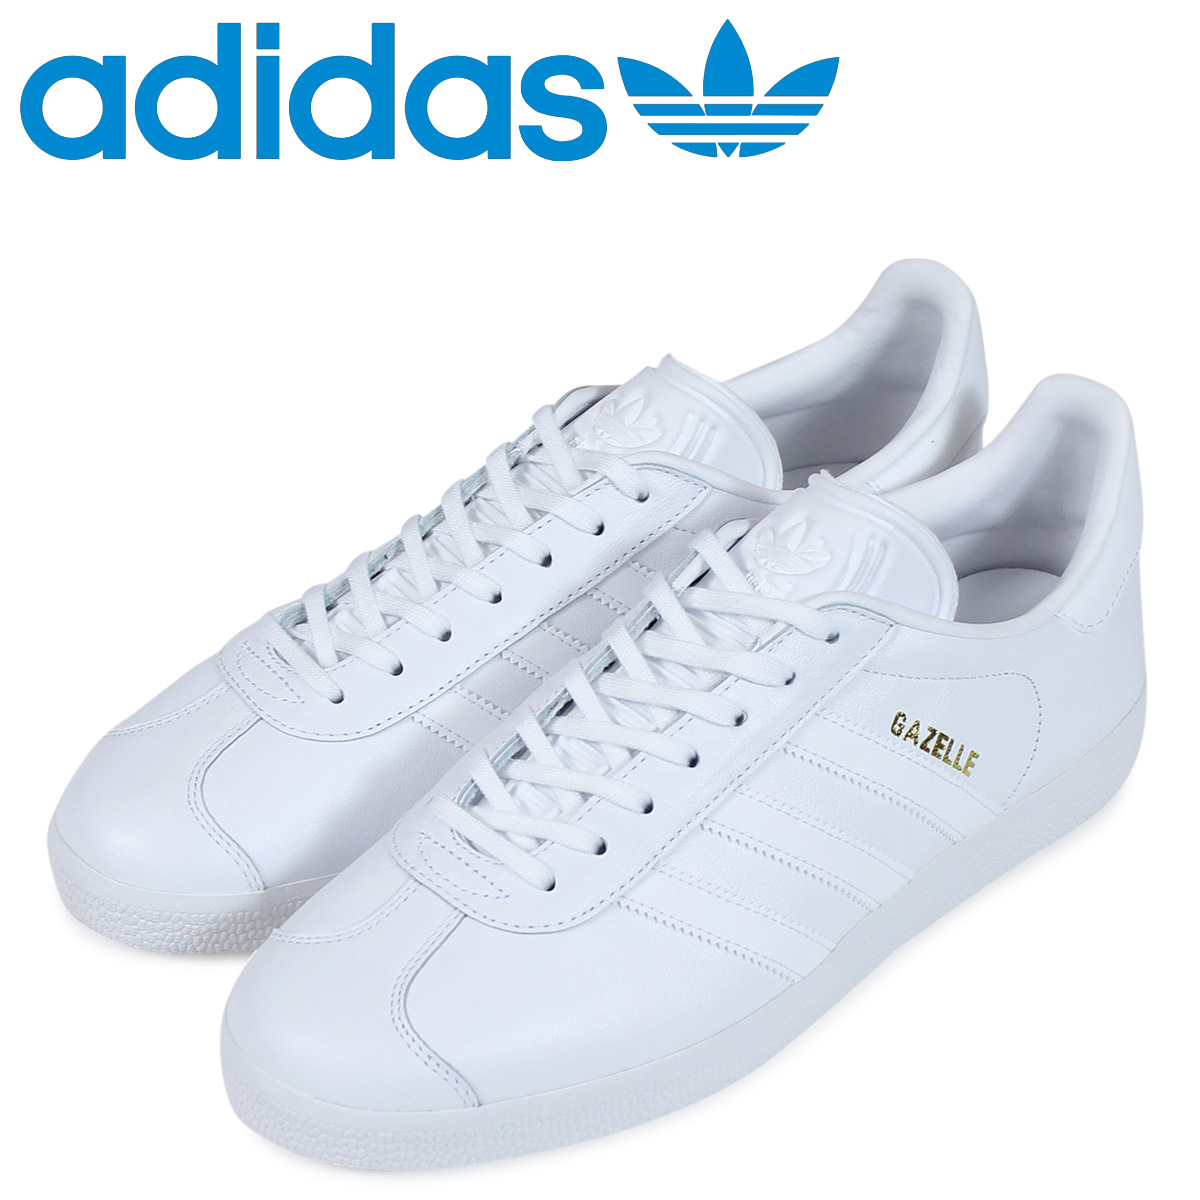 adidas originals gazelle trainers in white bb5498